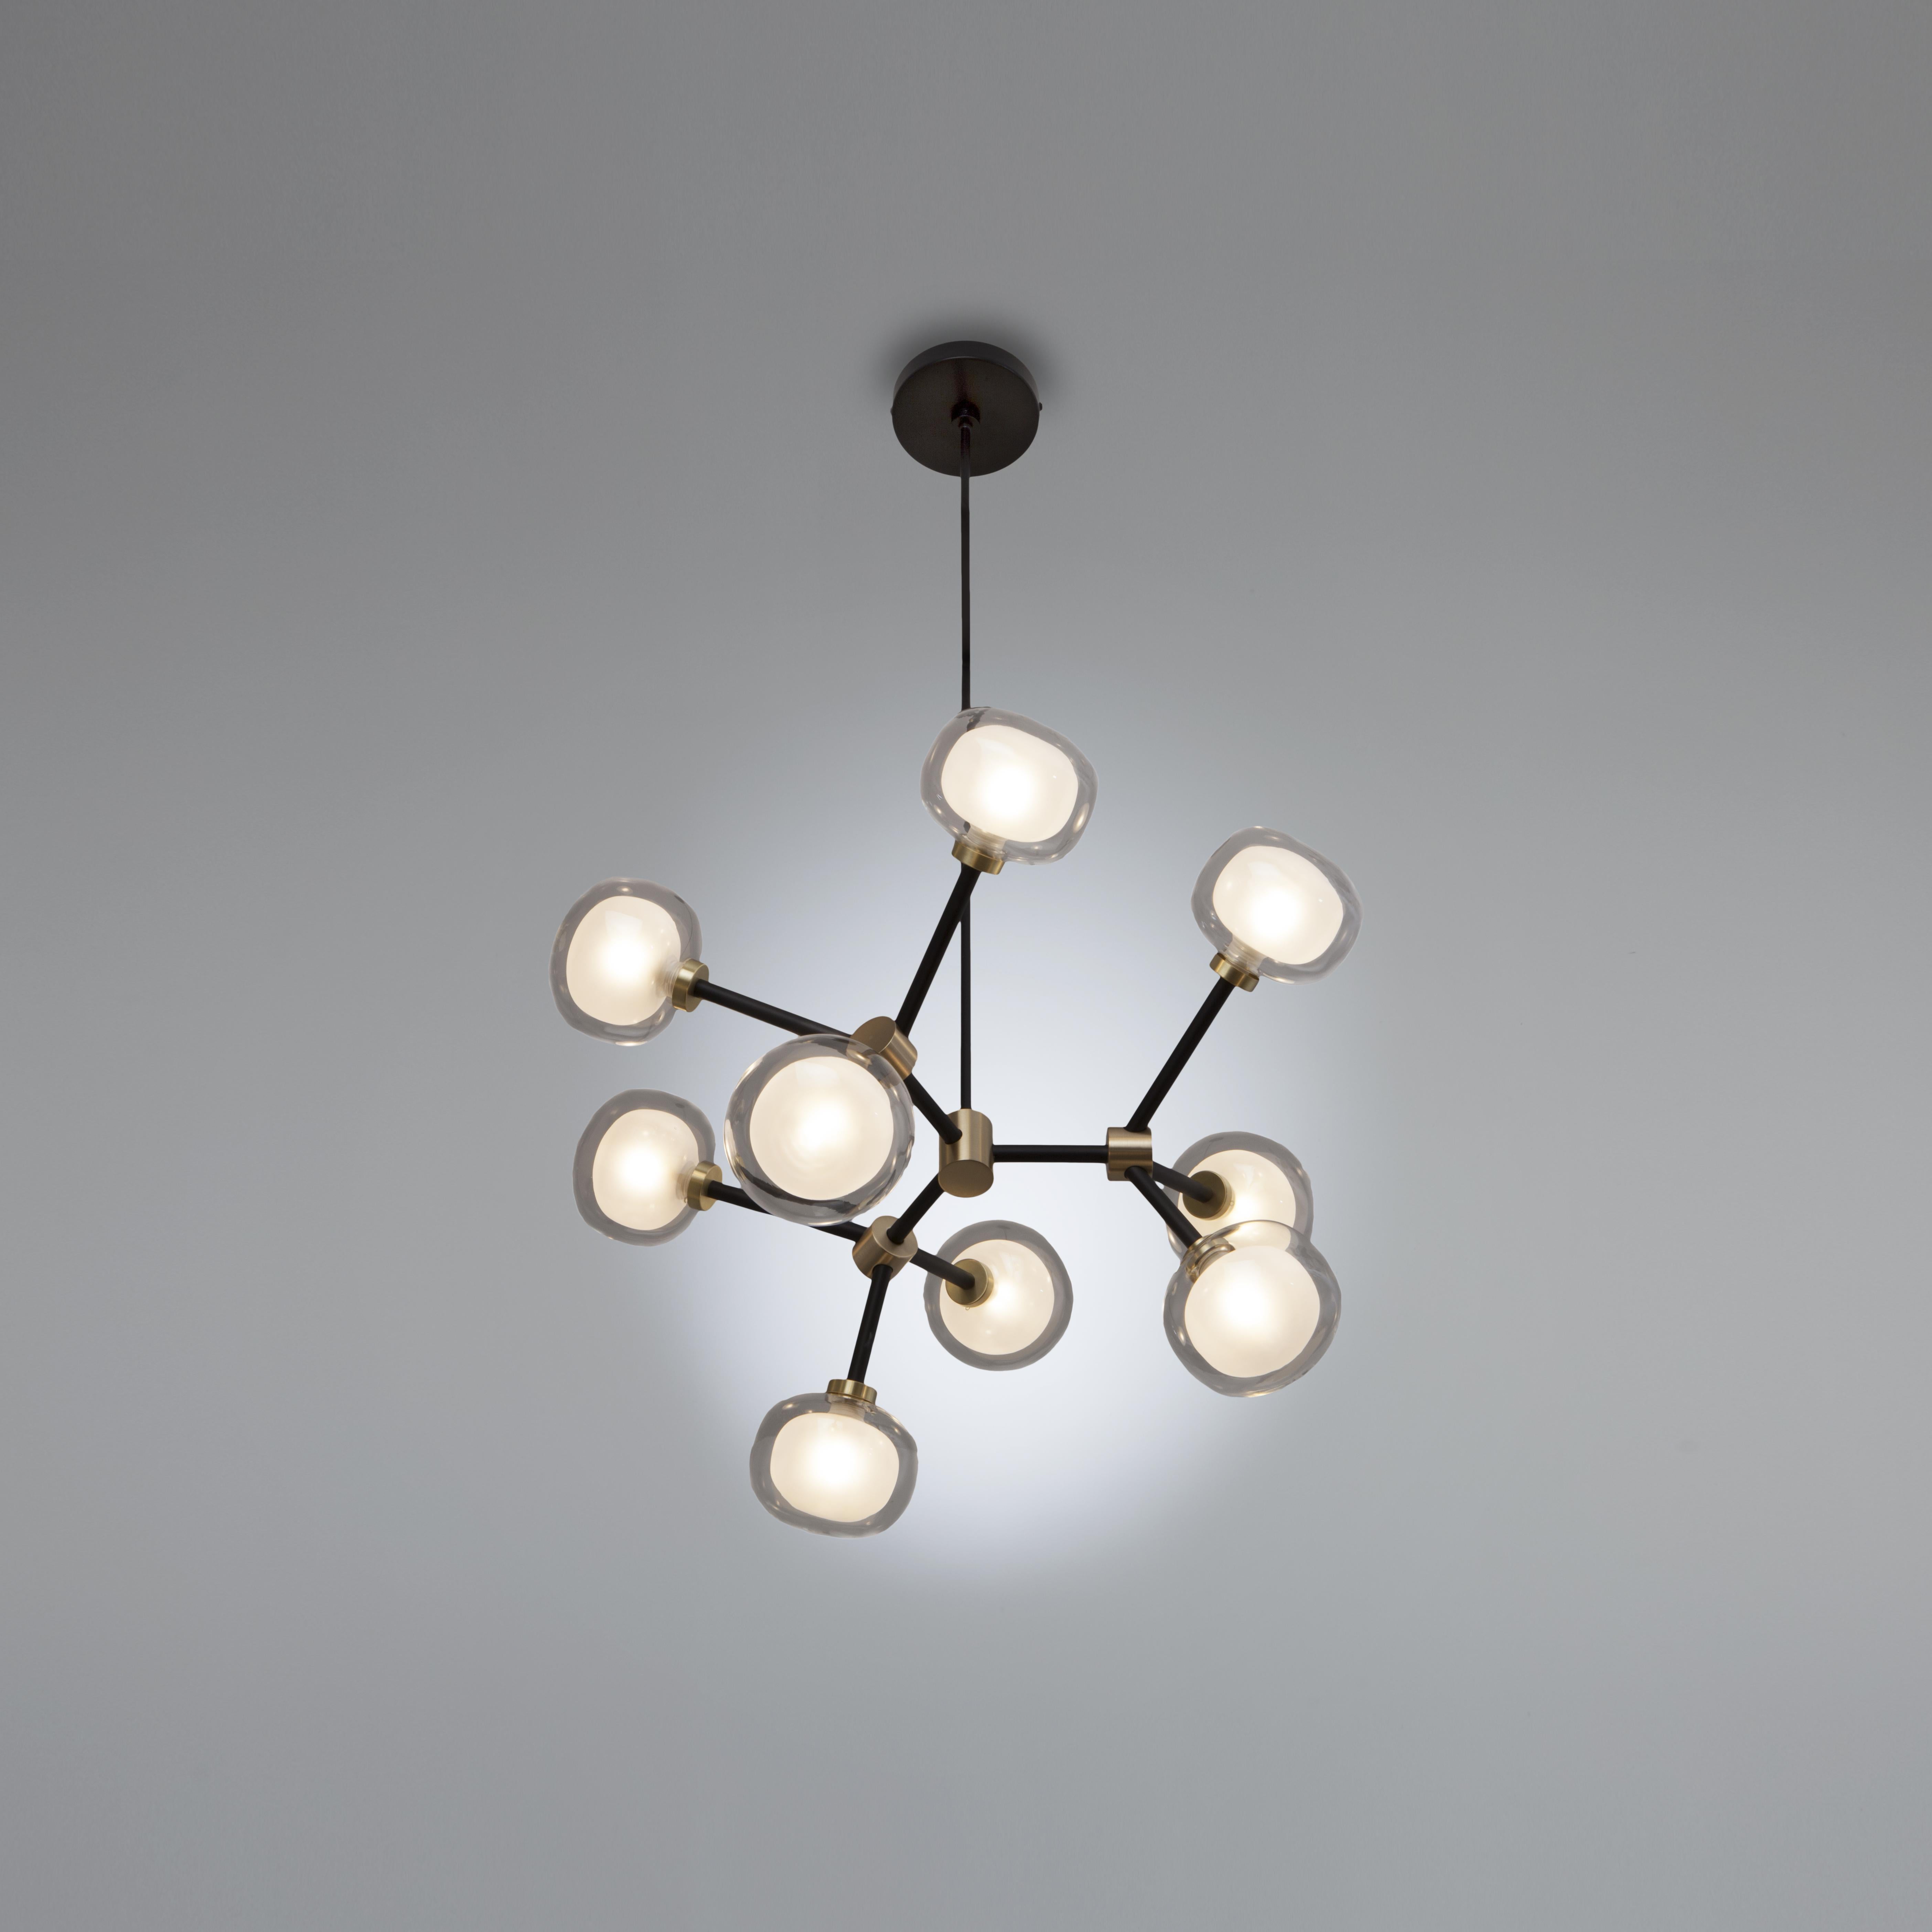 1950 inspirierte Kollektion von eleganten und raffinierten Lampen, die mit ihren Details jeden Raum bereichern. Ein doppelseitiges, kugelförmiges, leuchtendes Objekt aus Borosilikatglas macht diese Lampen in verschiedenen Zusammensetzungen und einer